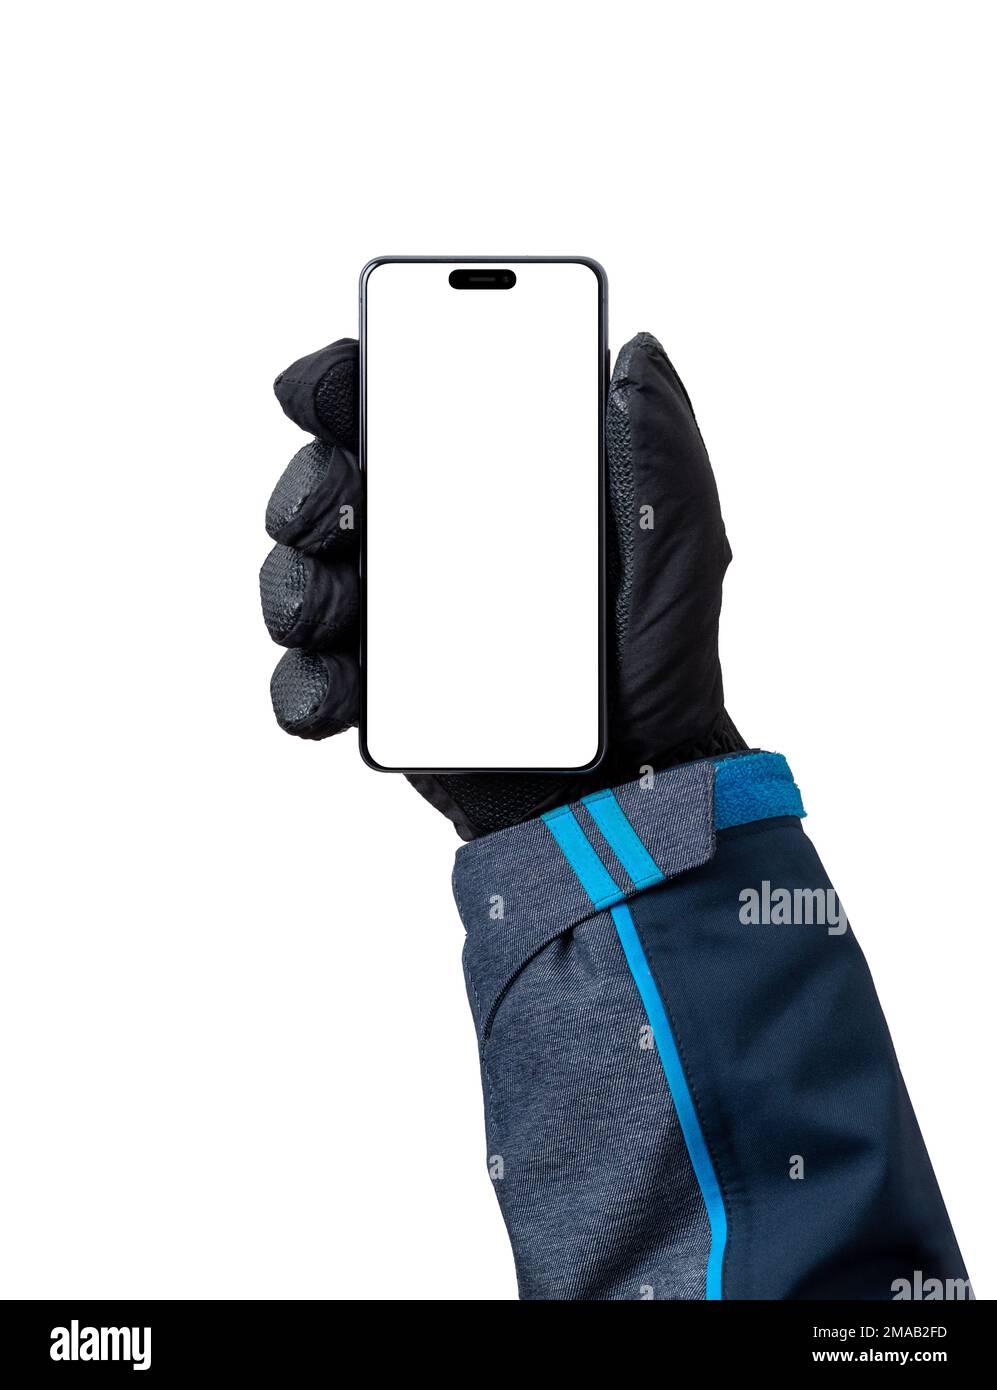 Telefonmodell in Männerhand mit Handschuh. Isolierte Anzeige für Ski-App-Werbung Stockfoto